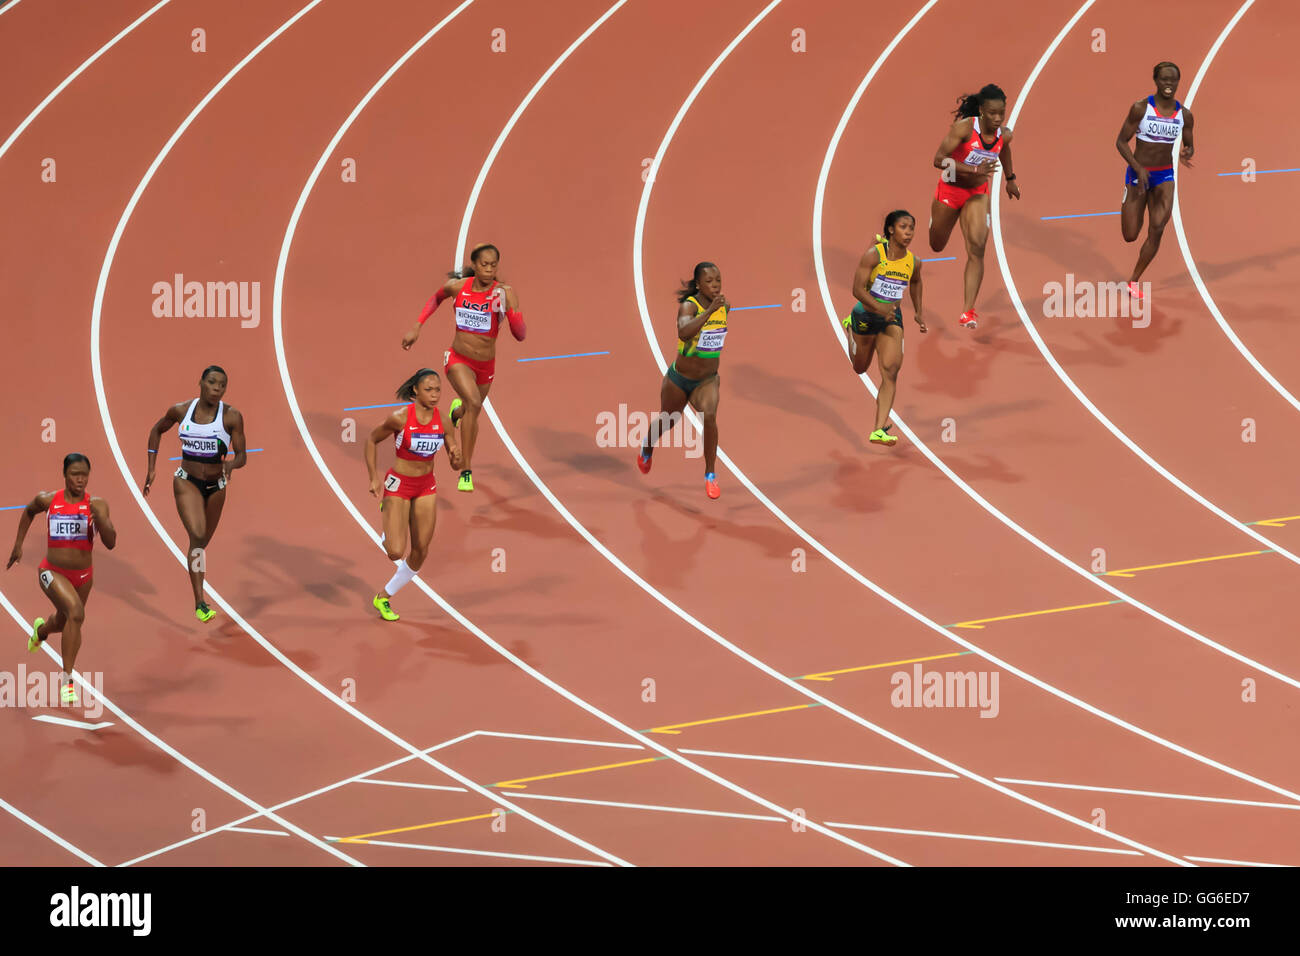 Finalisten Run der Biegung, Frauen 200m Finale, Olympiastadion, London 2012, Olympische Sommerspiele, London, England, Vereinigtes Königreich Stockfoto